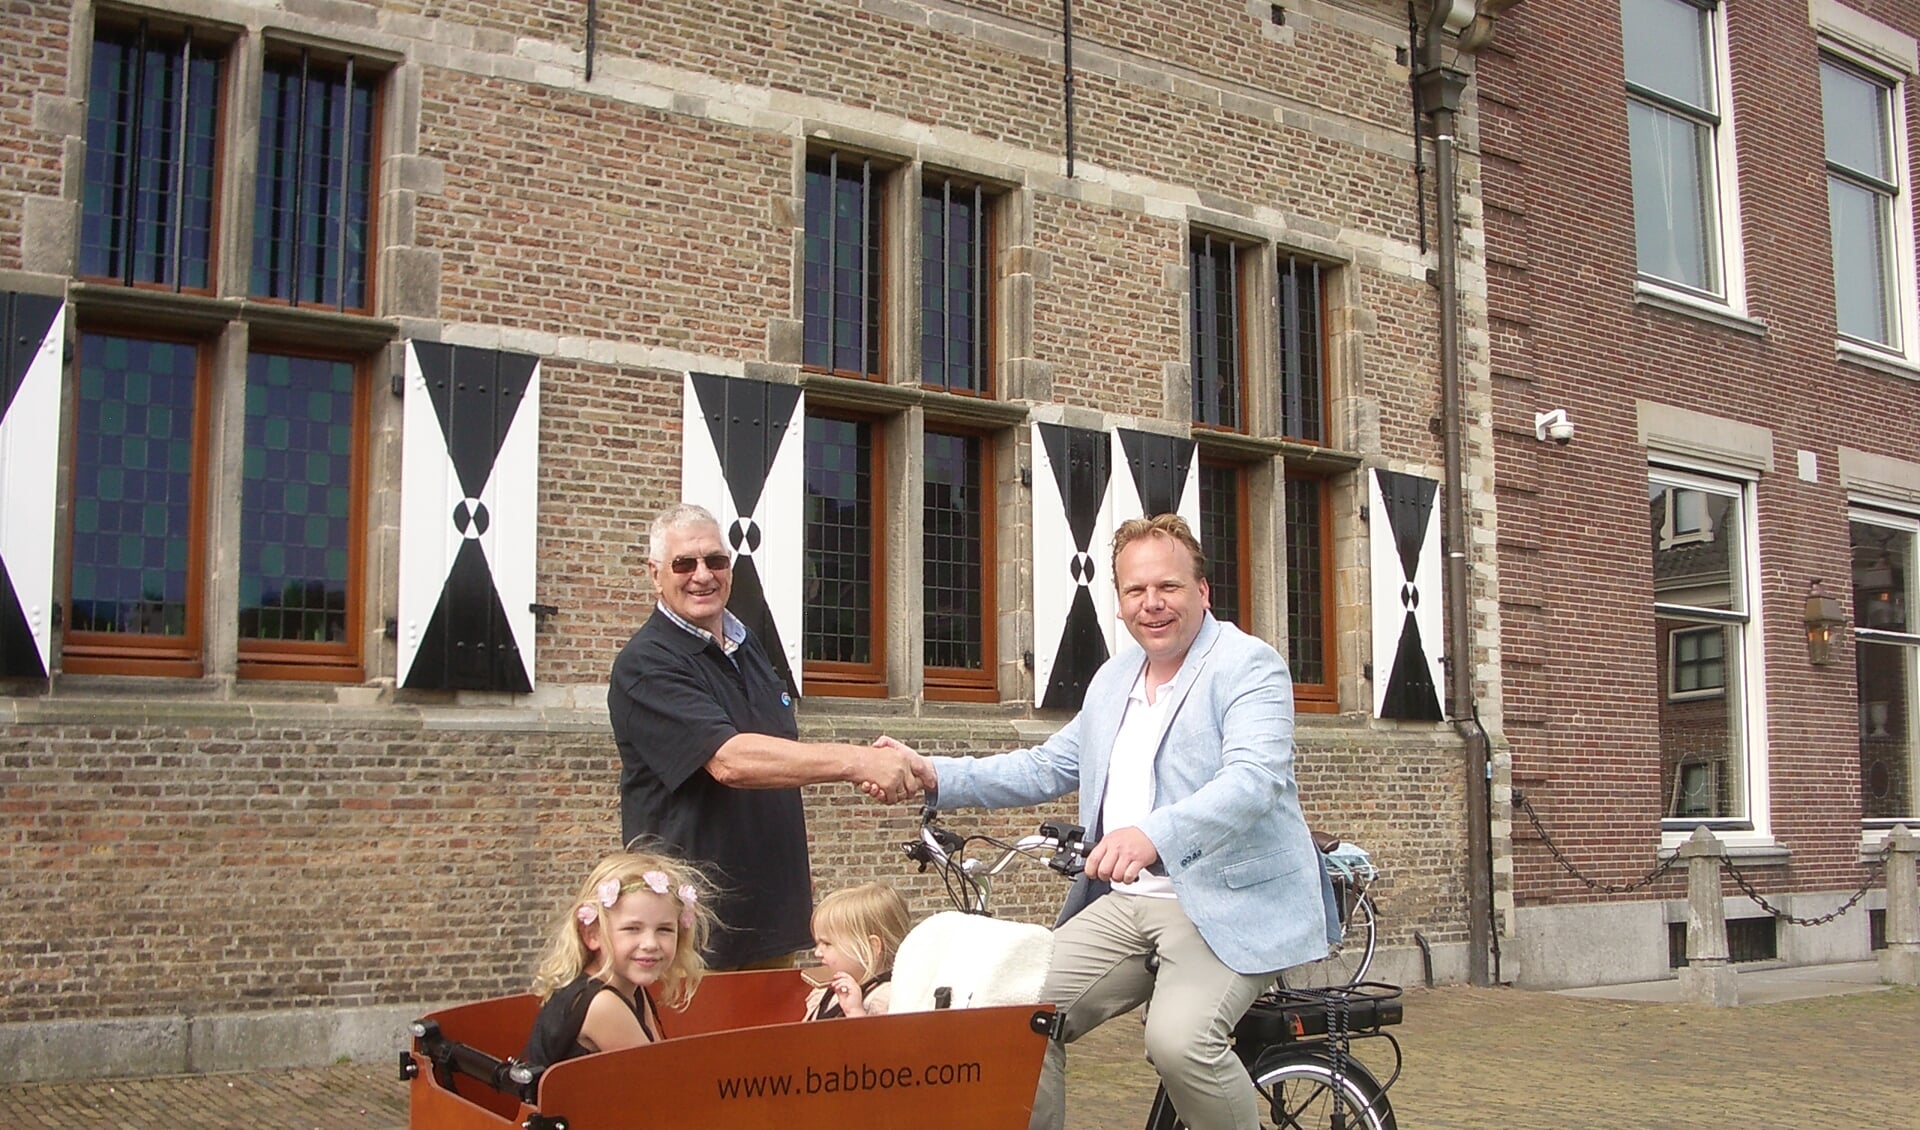 Wethouder Thomas Zwiers aan de start in Willemstad met de bakfiets en met daarin twee van zijn dochters. FOTO TIES STEEHOUWER